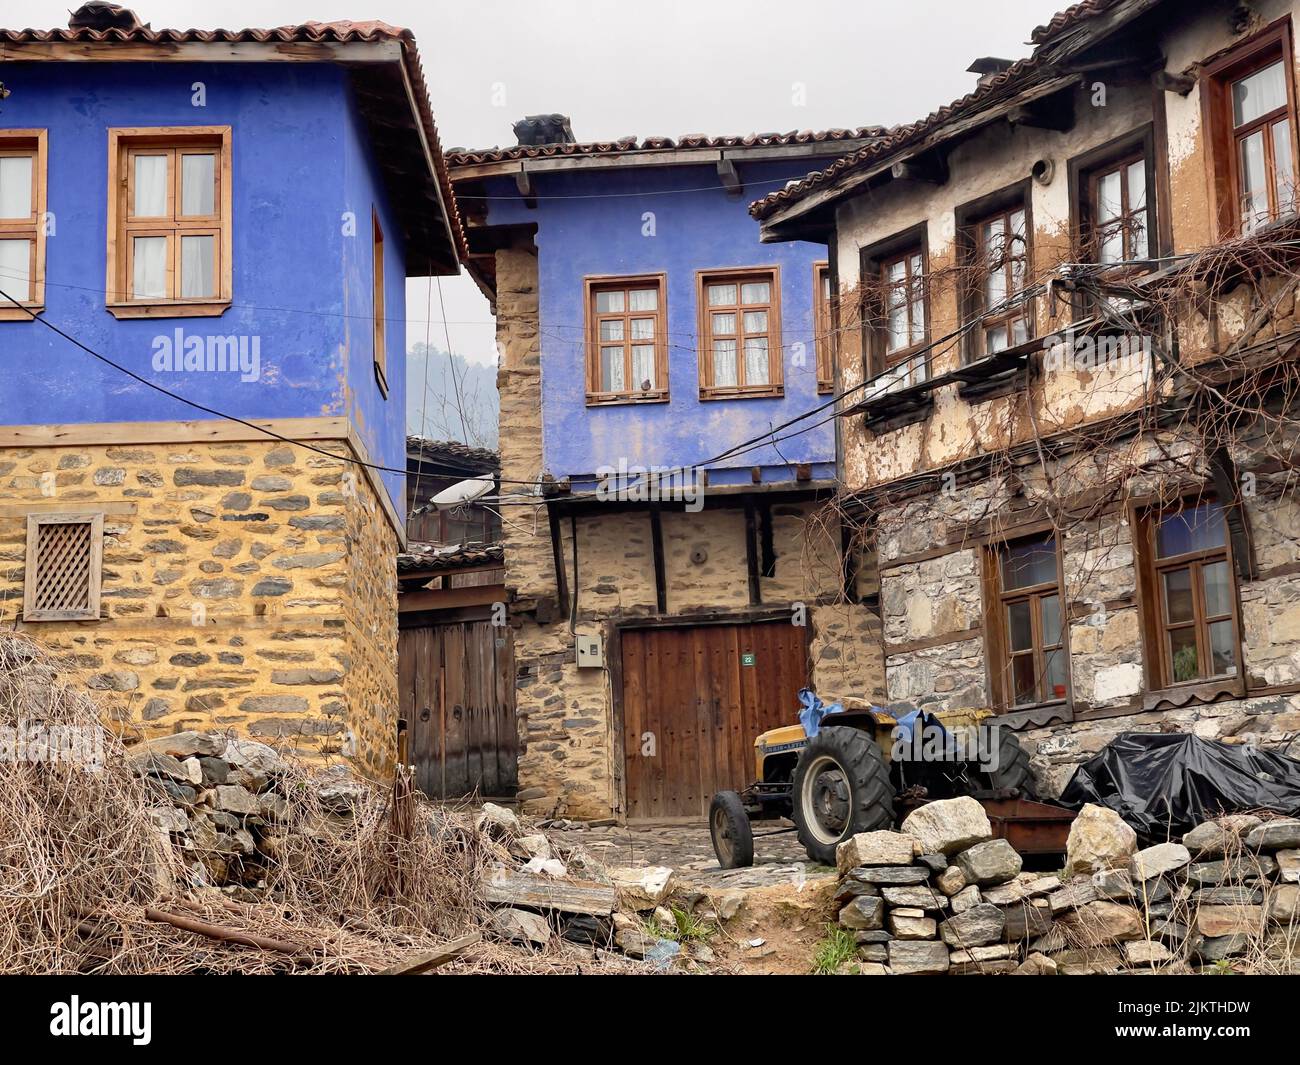 The historic UNESCO Village of Cumalikizik, Bursa, Turkey Stock Photo